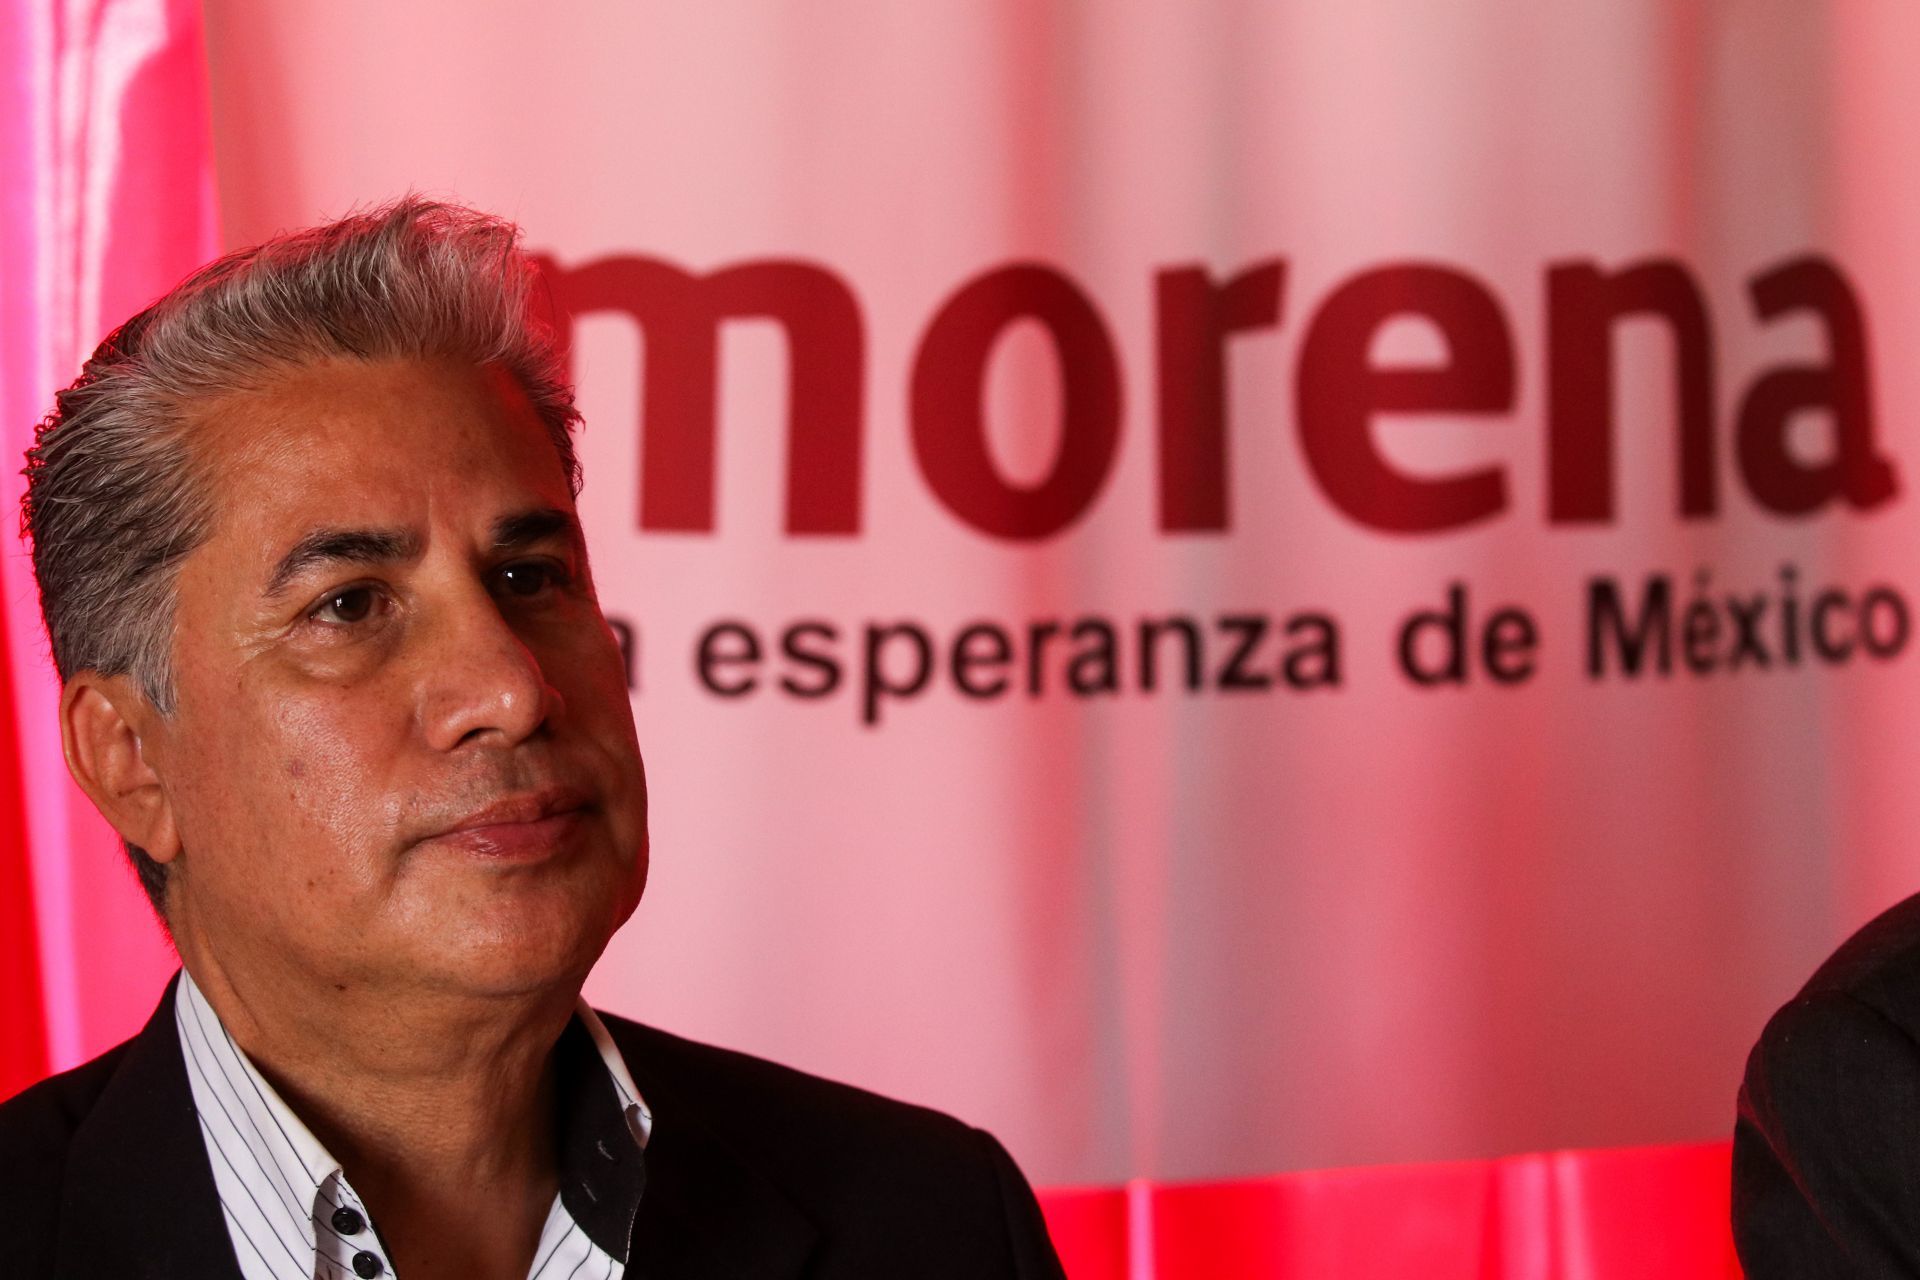 Aspirante a dirigencia de Morena quiere cambiar a ‘Tabasco de López Obrador’ el nombre del estado